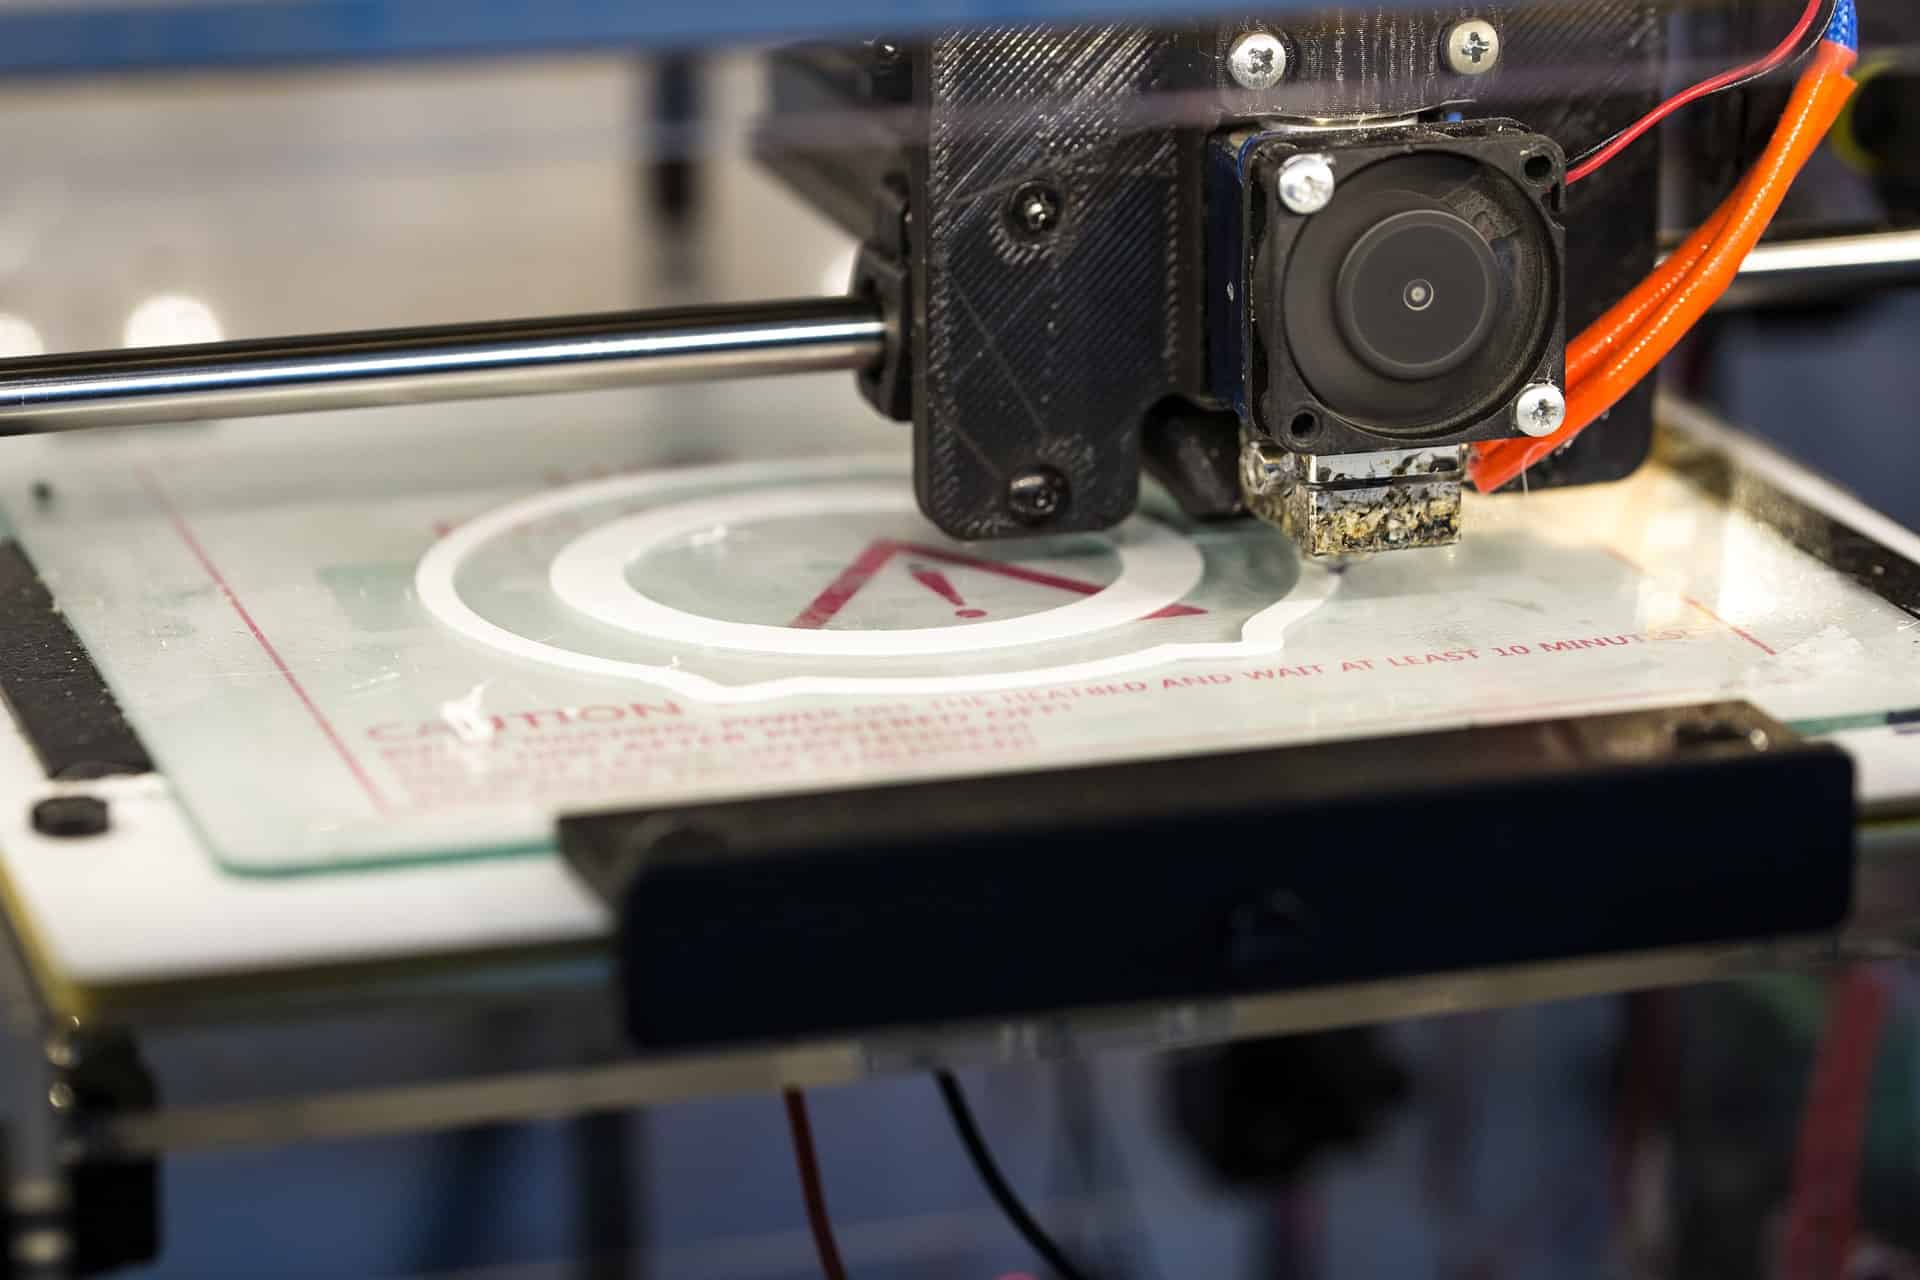 4D-printen komt eraan - alles wat je erover moet weten